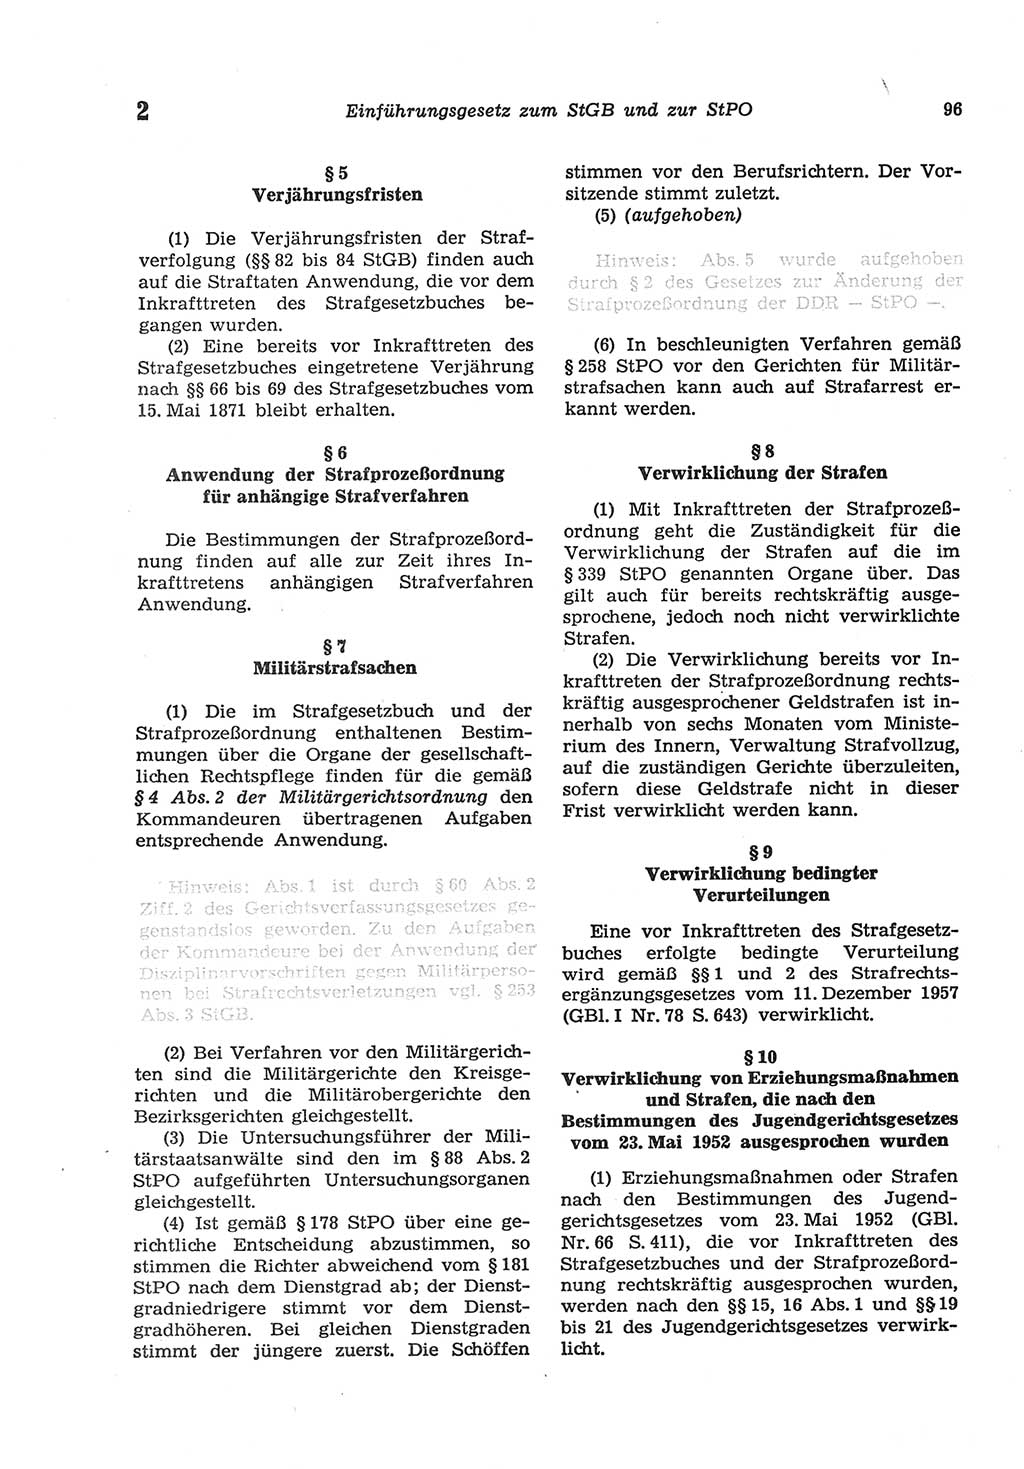 Strafgesetzbuch (StGB) der Deutschen Demokratischen Republik (DDR) und angrenzende Gesetze und Bestimmungen 1977, Seite 96 (StGB DDR Ges. Best. 1977, S. 96)